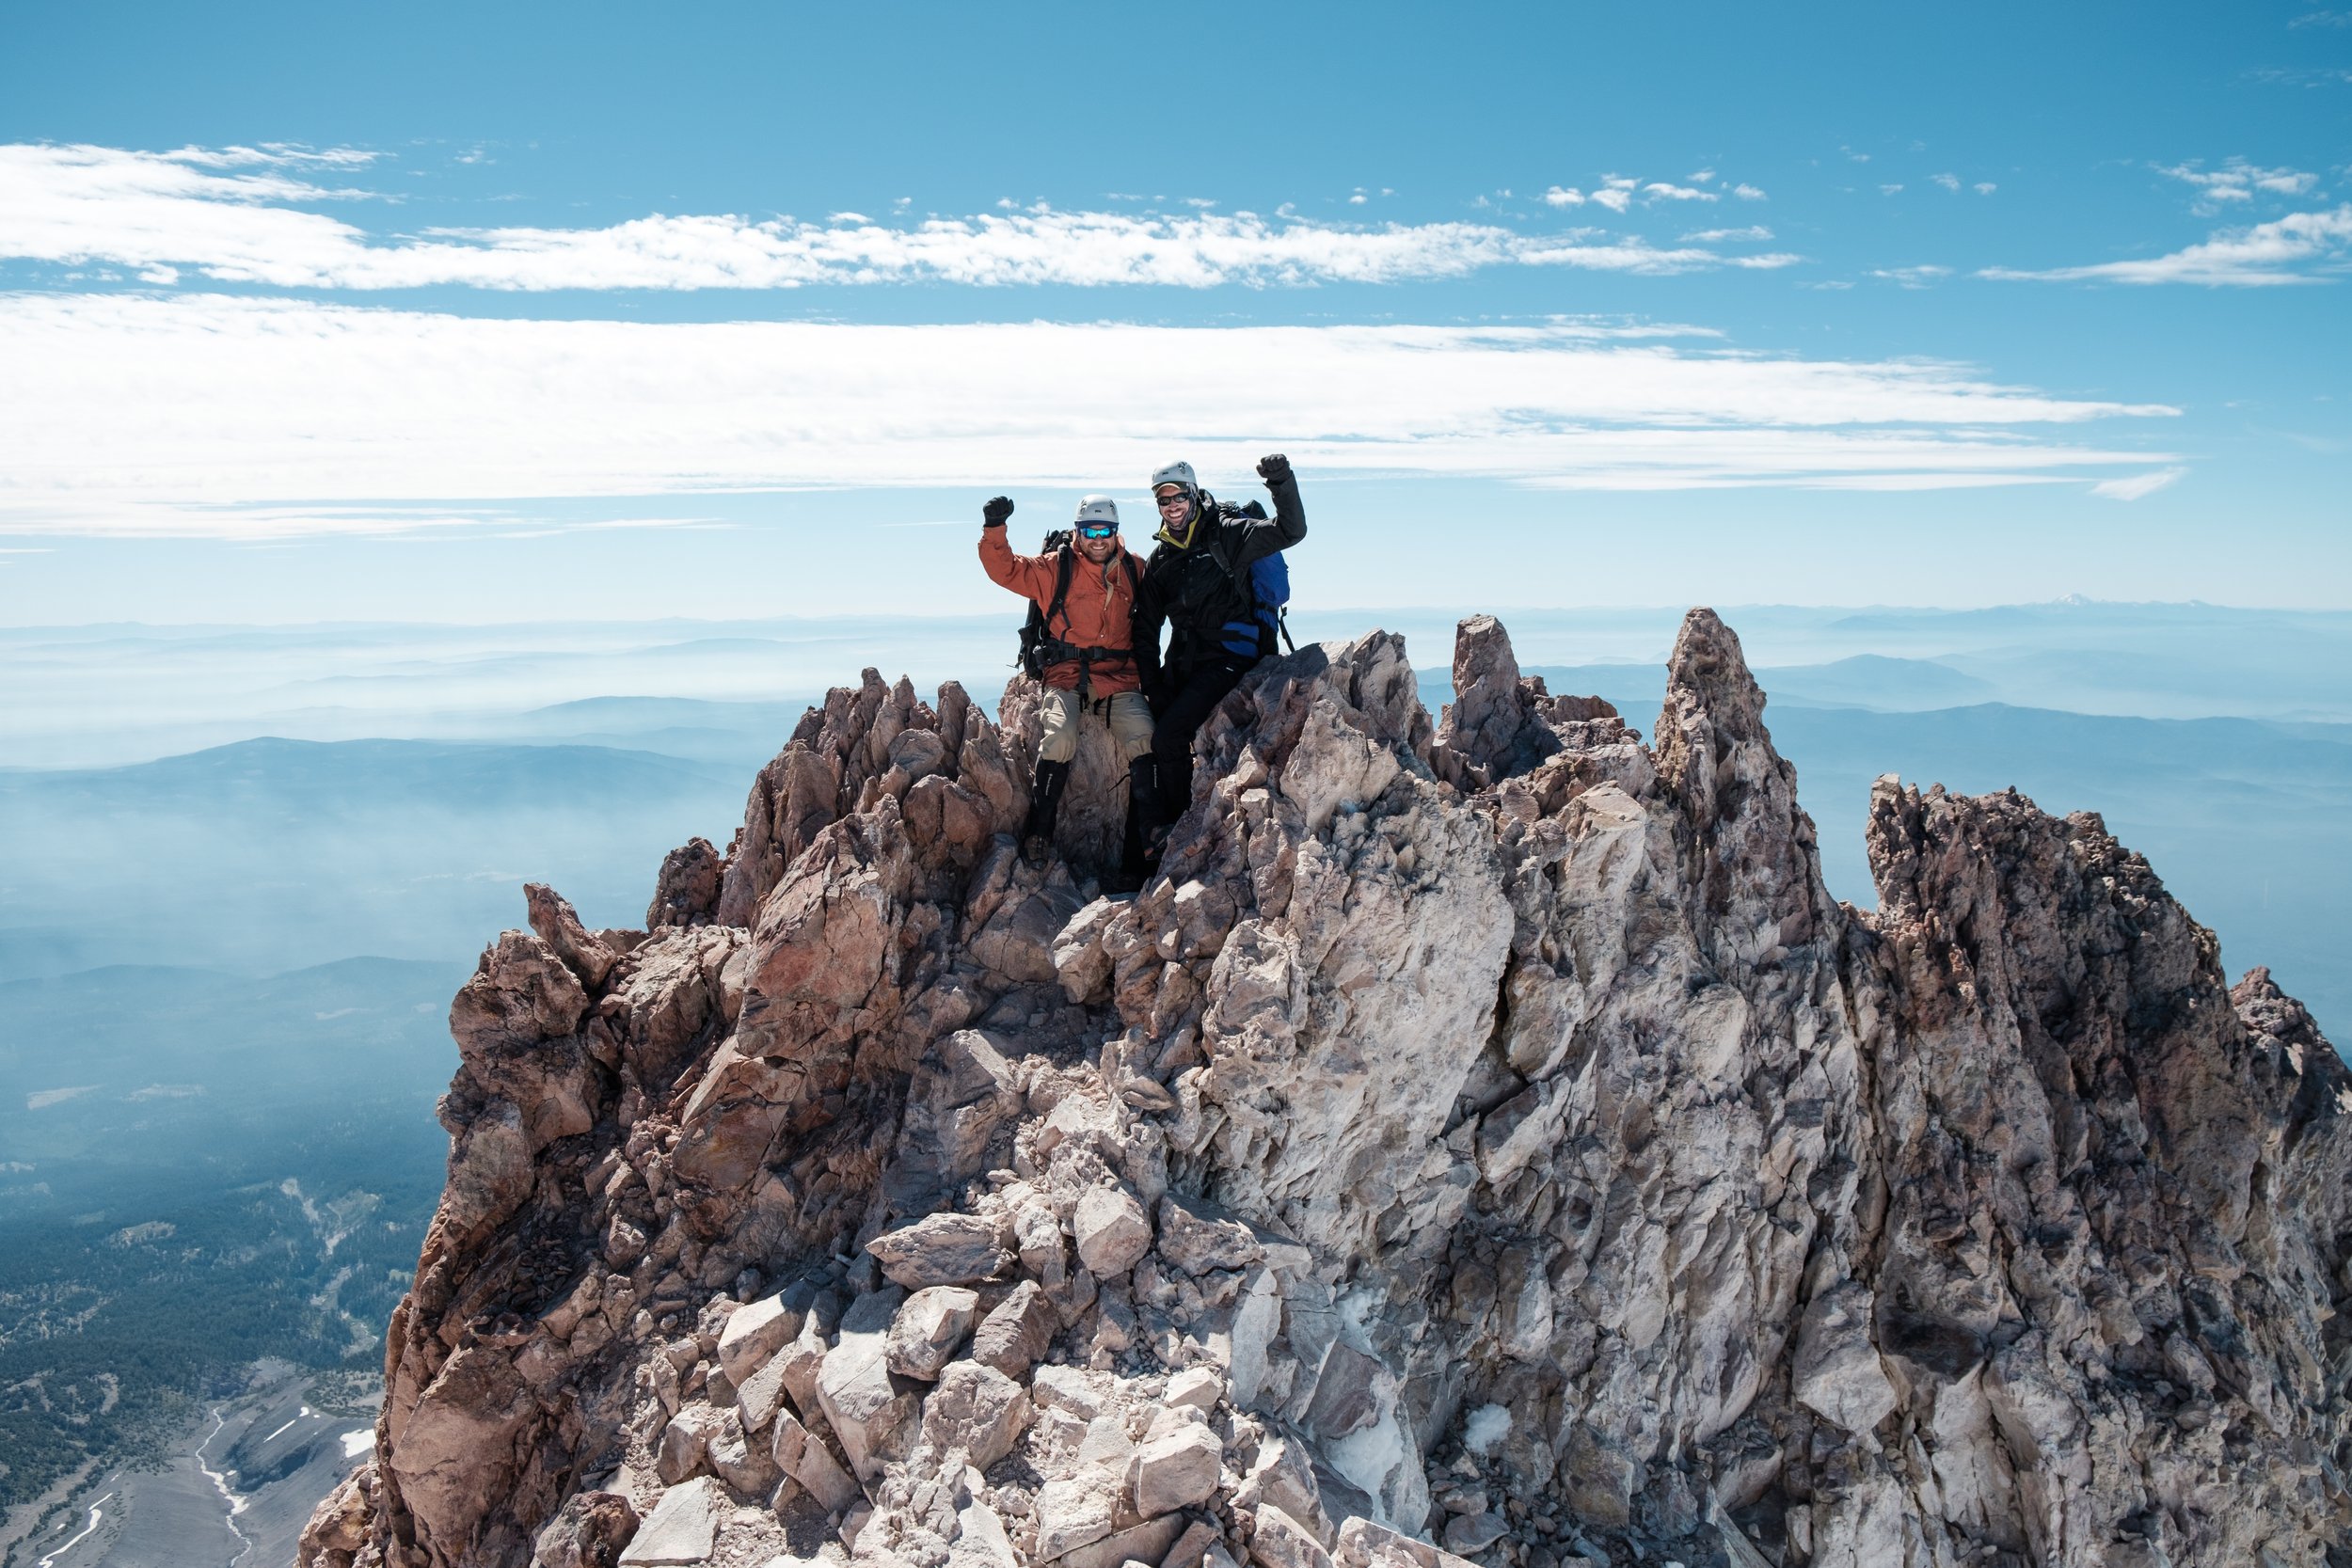 Mt Shasta summit